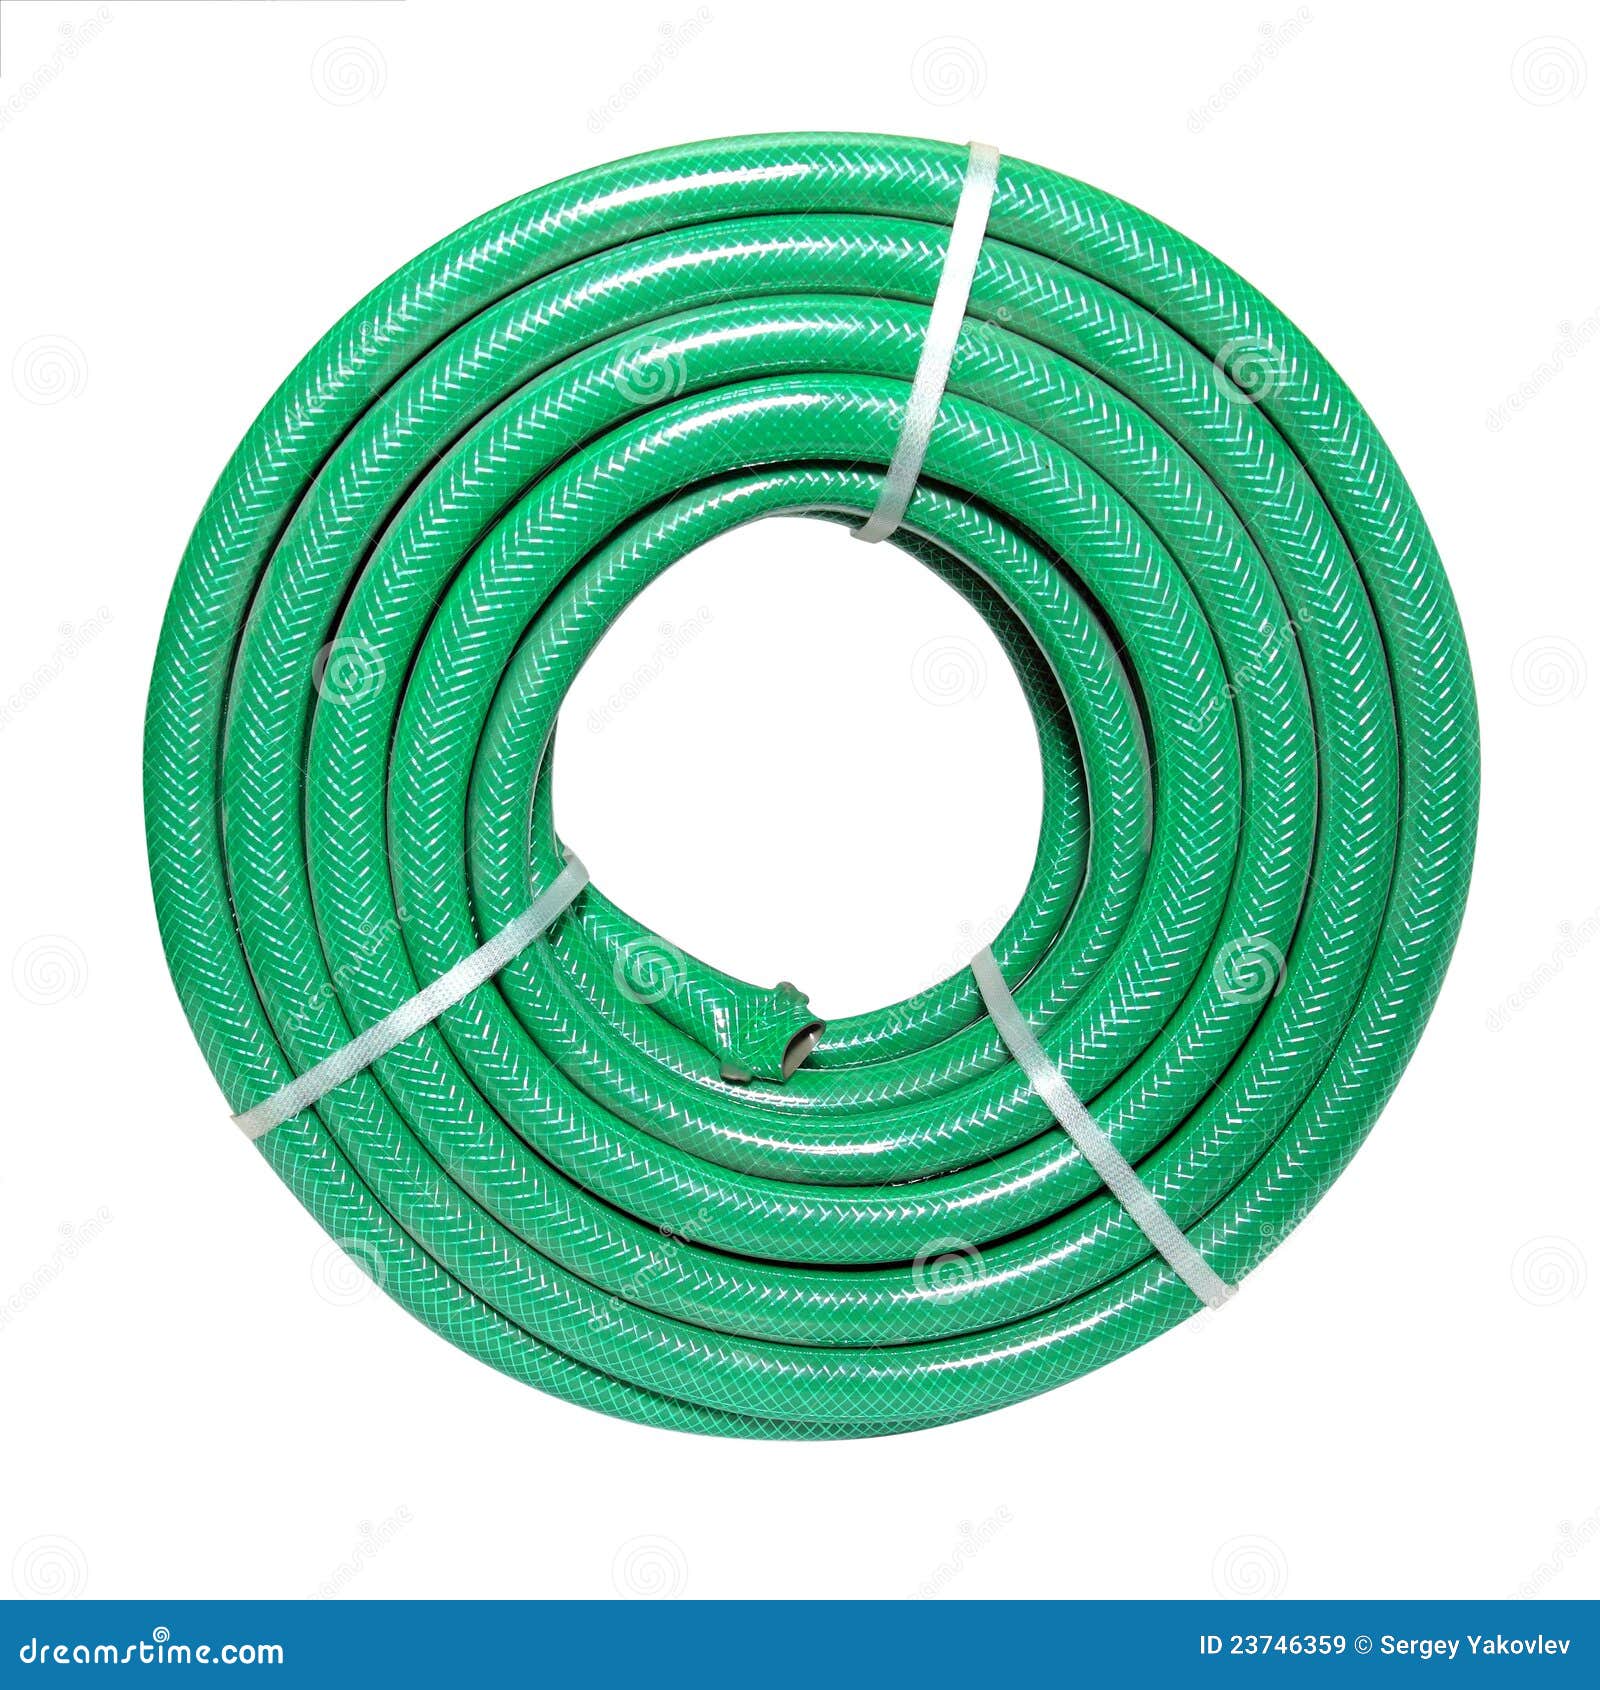 free clipart garden hose - photo #42